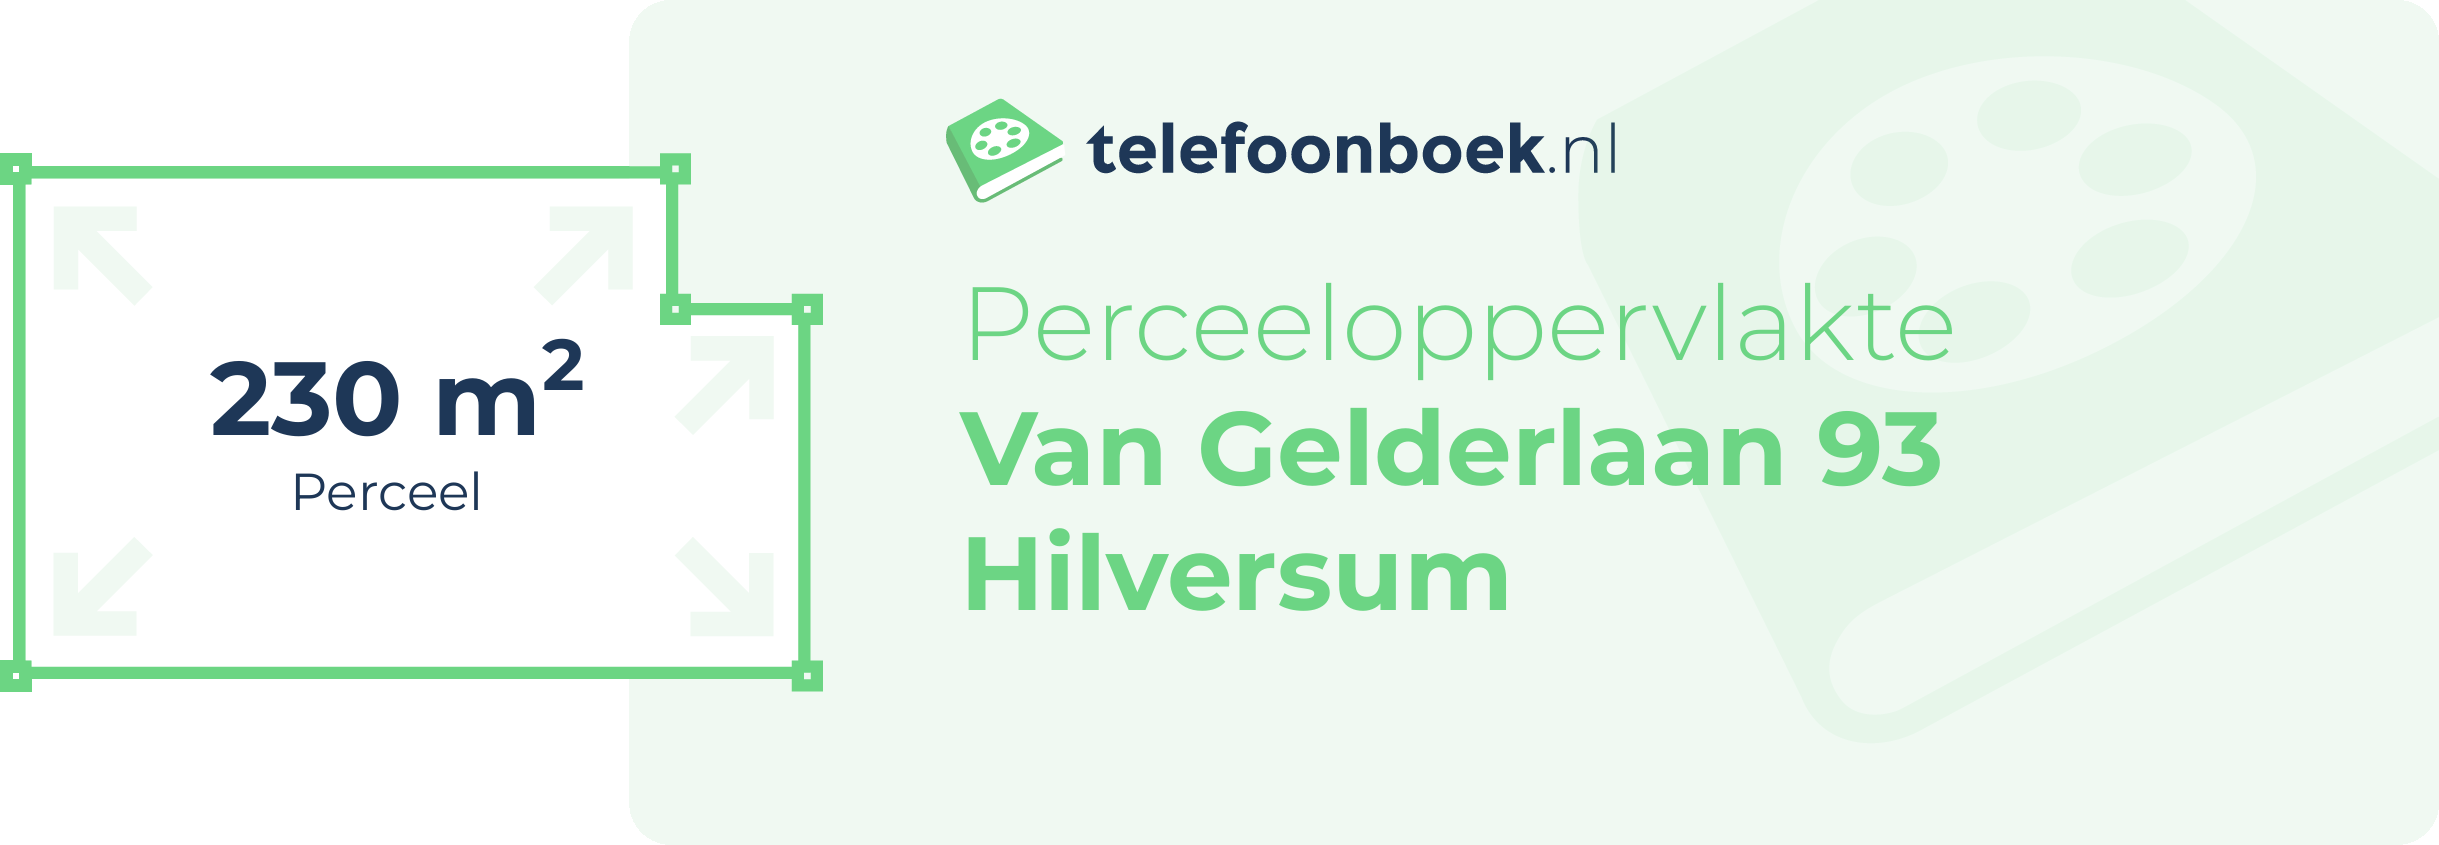 Perceeloppervlakte Van Gelderlaan 93 Hilversum